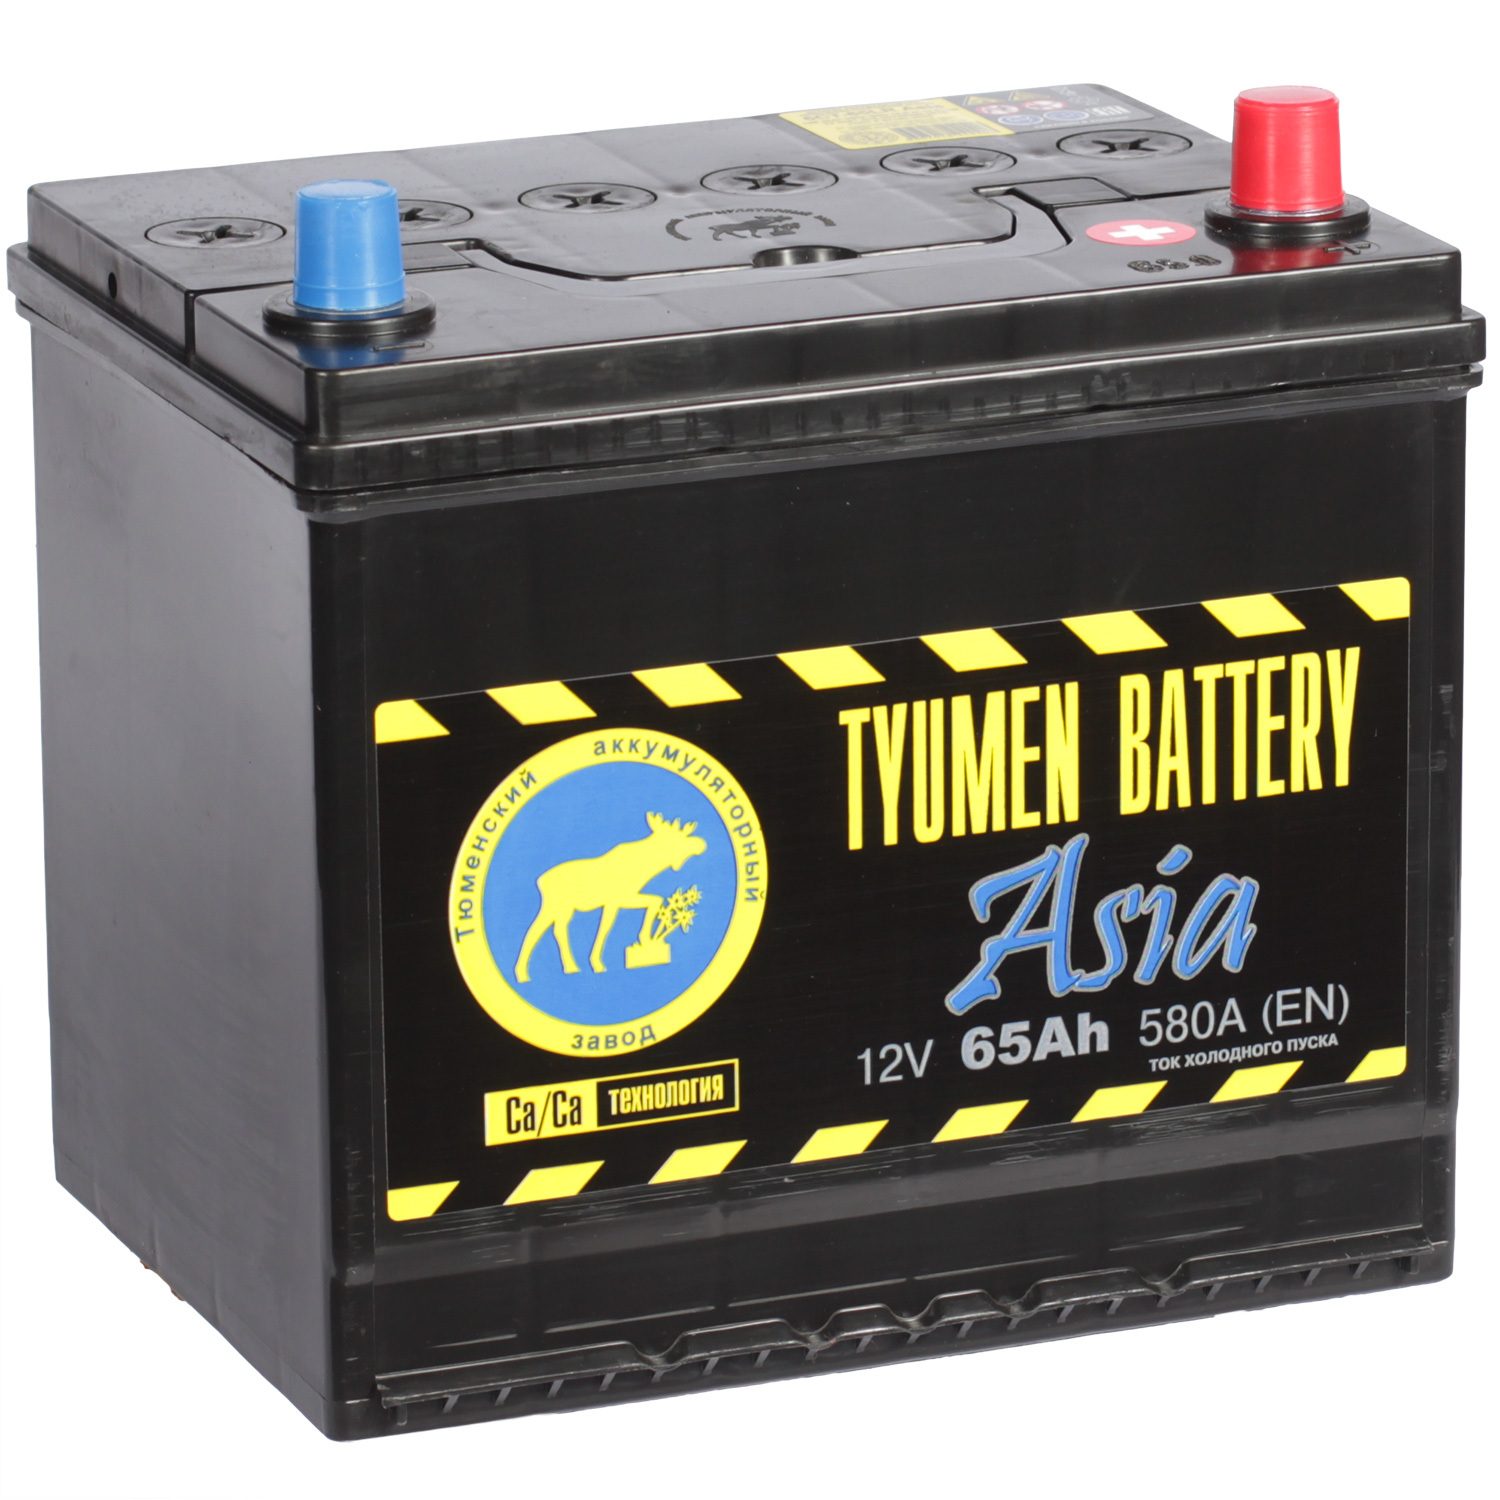 Tyumen Battery Автомобильный аккумулятор Tyumen Battery Asia 65 Ач обратная полярность D23L автофан автомобильный аккумулятор аком asia 65 ач обратная полярность d23l